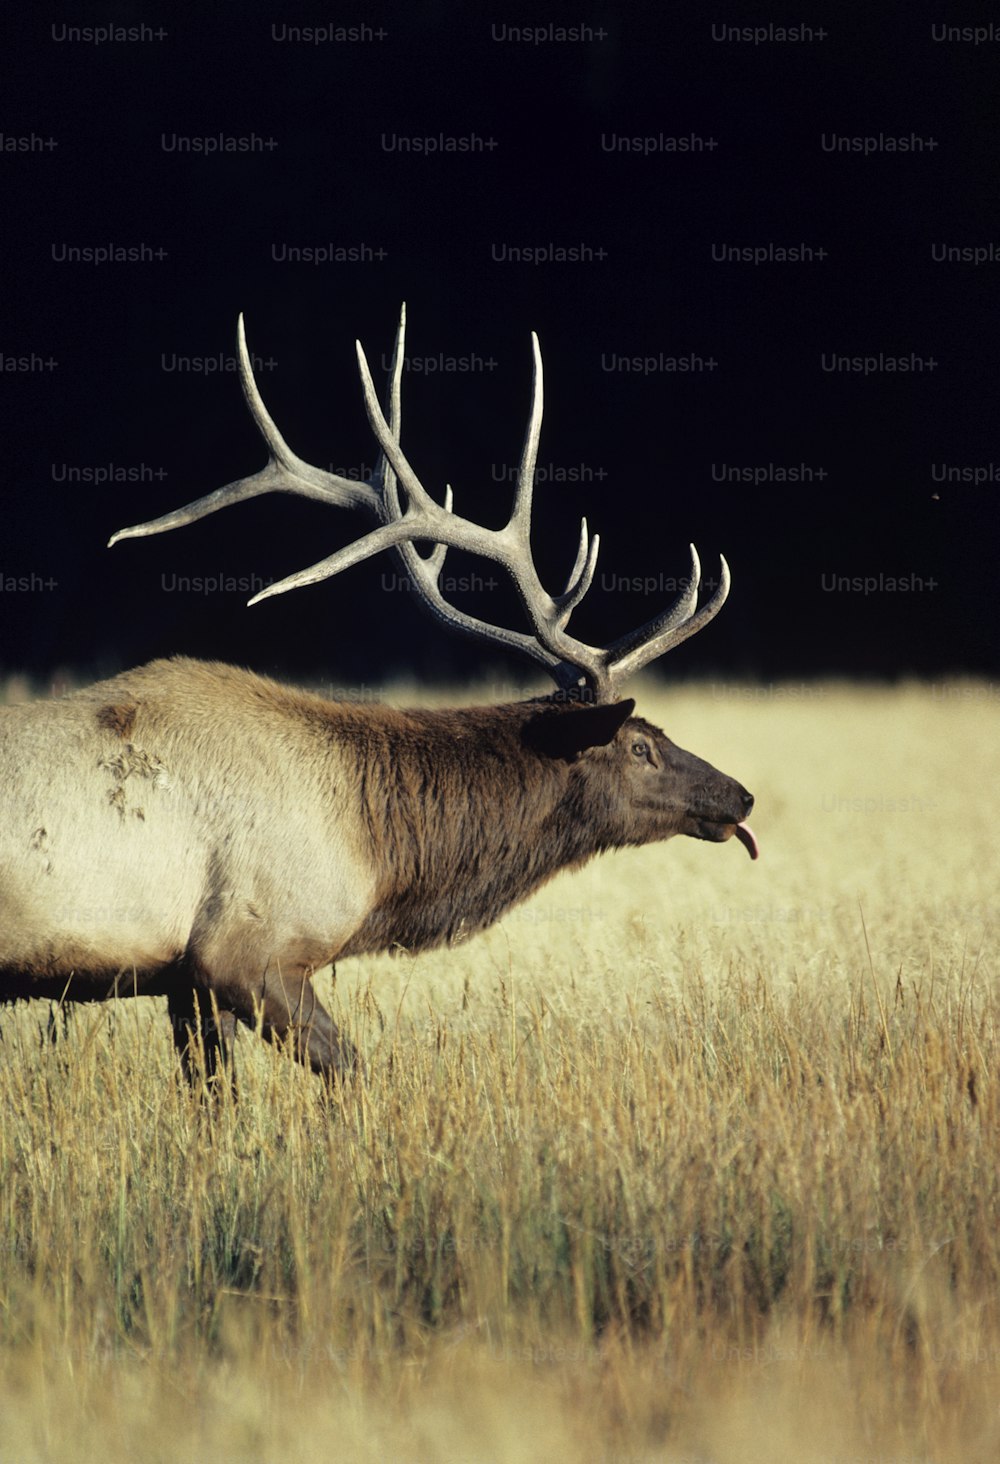 a large elk walking across a dry grass field